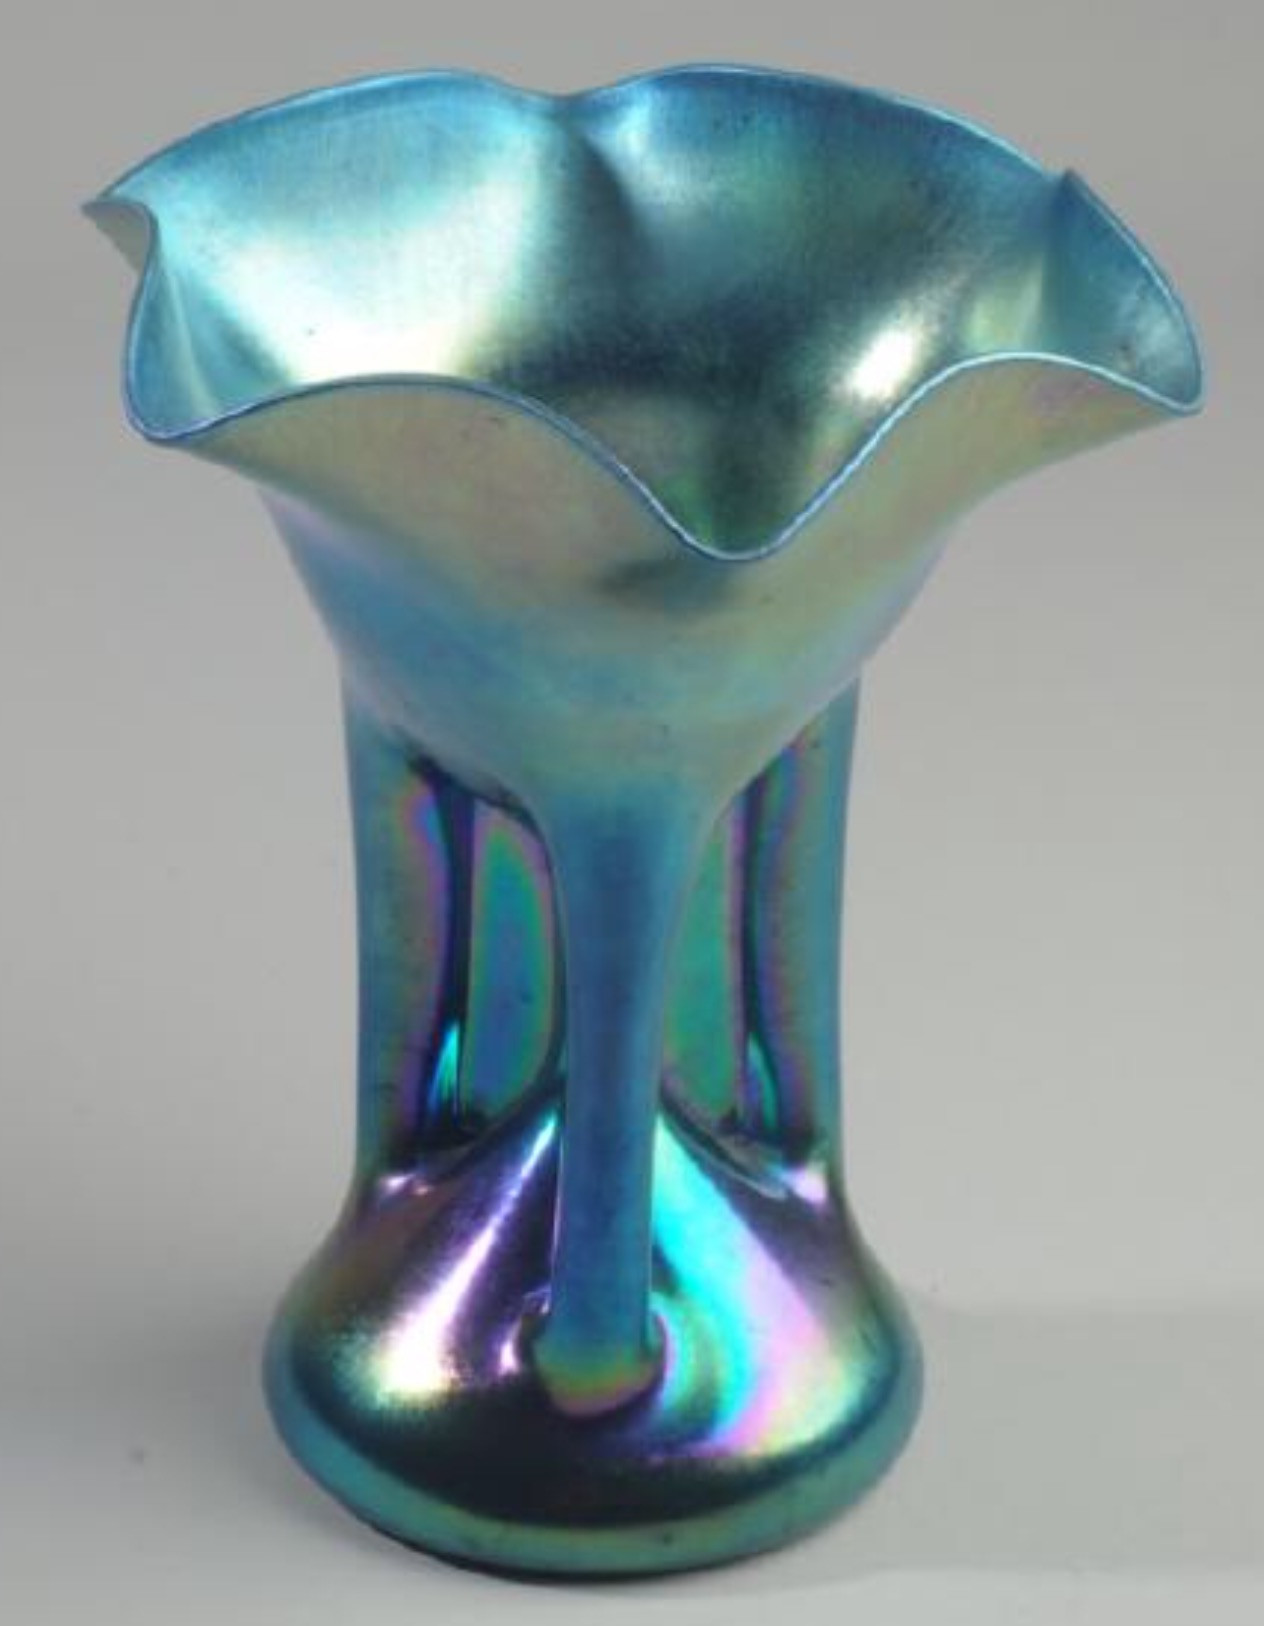 22 Spectacular Steuben Blue Aurene Vase 2024 free download steuben blue aurene vase of carder steuben club shape index results for carder steuben vase 2763 ac2b7 2763 vase blue aurene iridescent